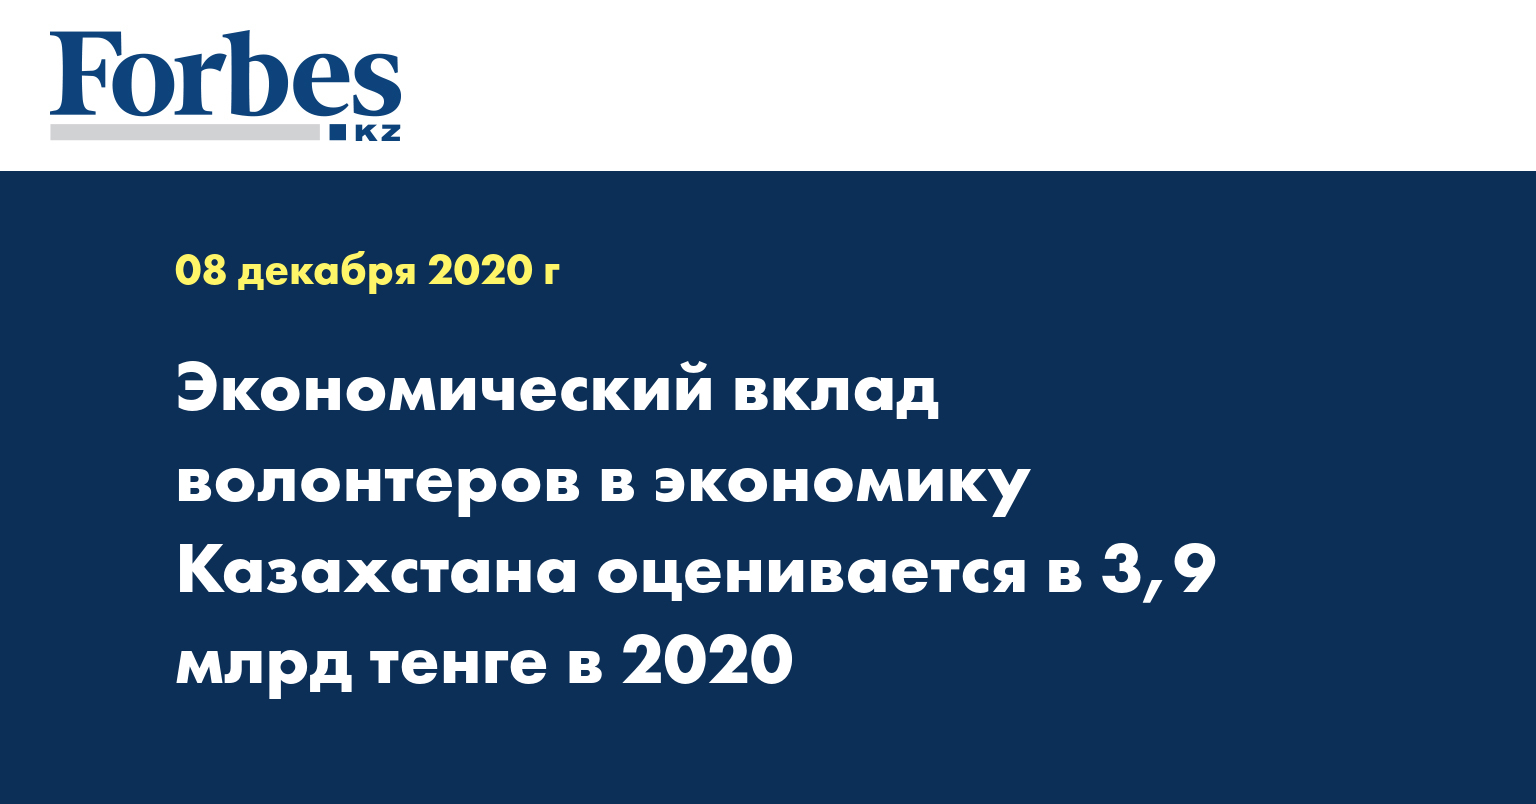 Экономический вклад волонтеров в экономику Казахстана оценивается в 3,9 млрд тенге в 2020 